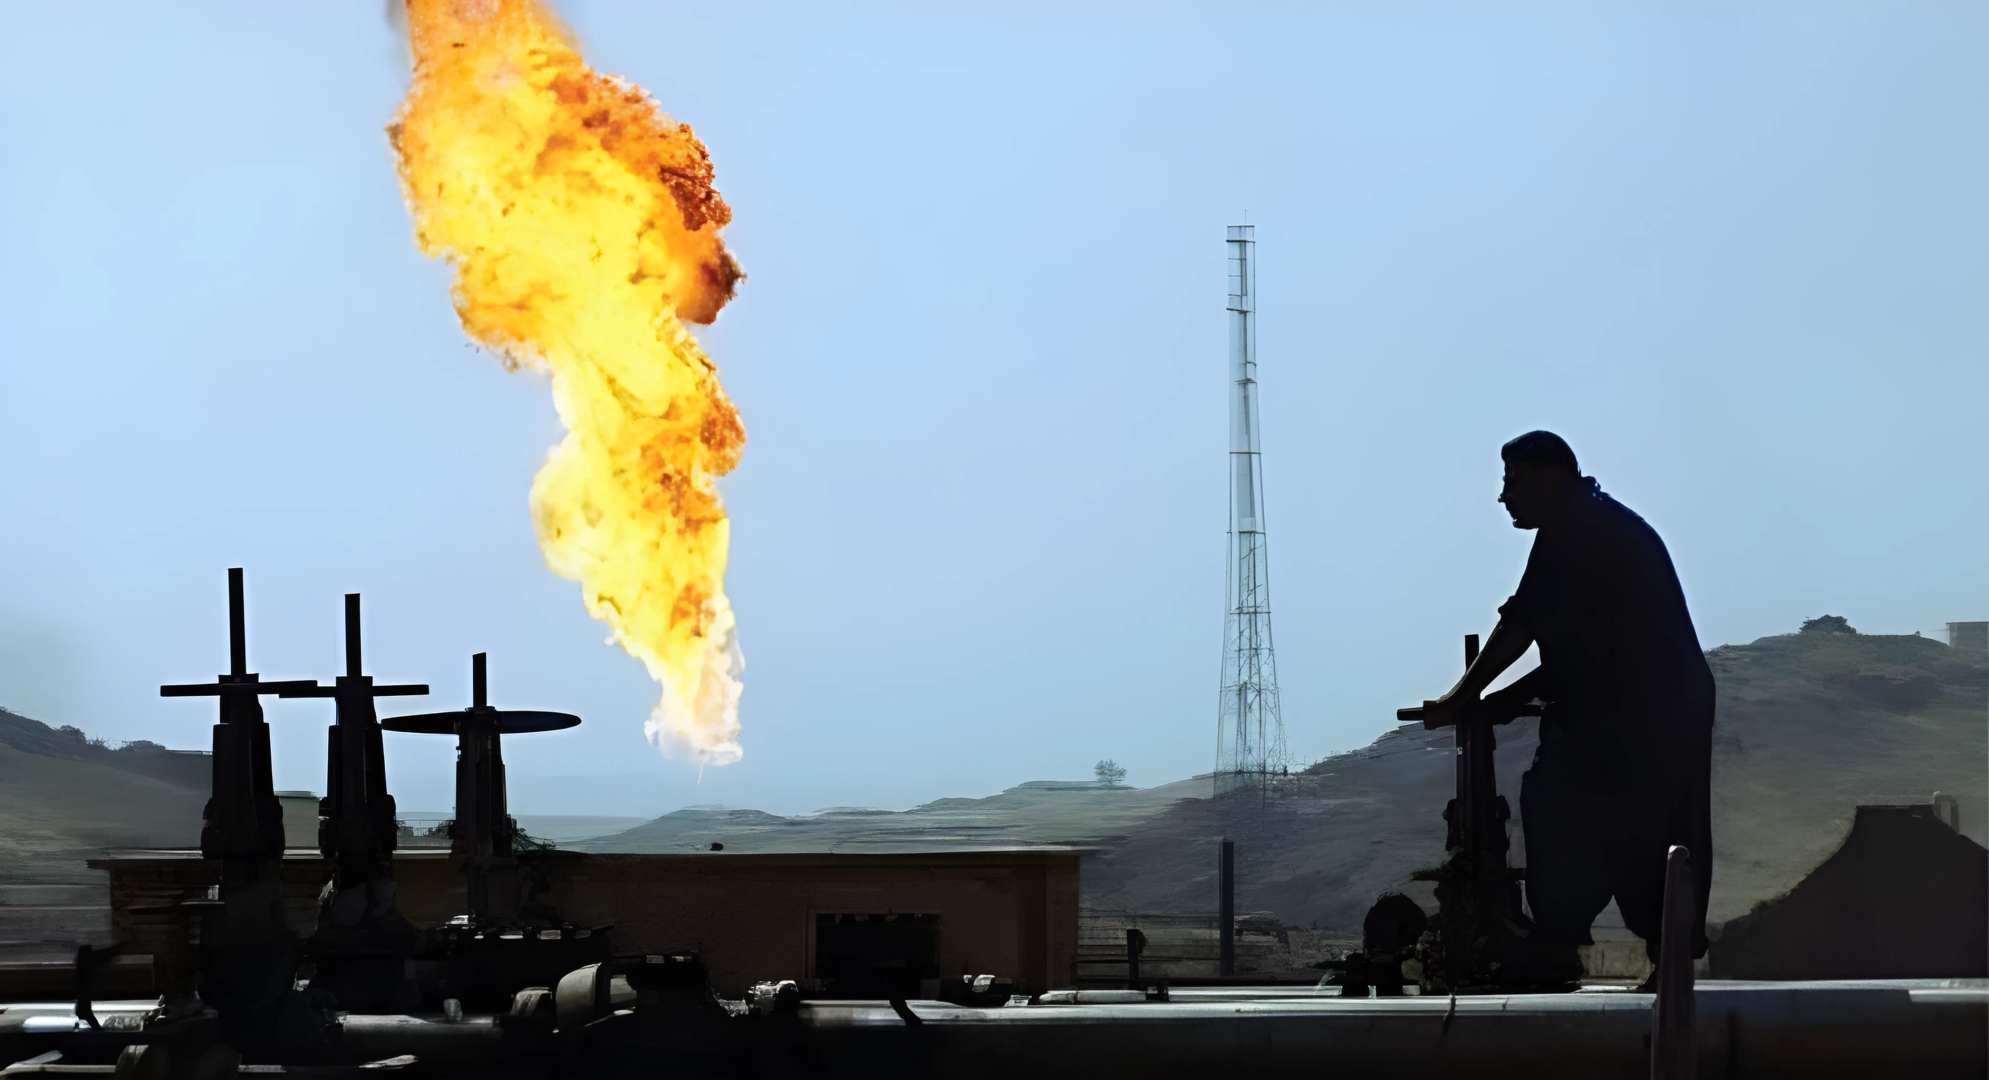 النفط الاتحادية ترد على بيان "إبيكور" وتعده تدخلاً في شؤون العراق